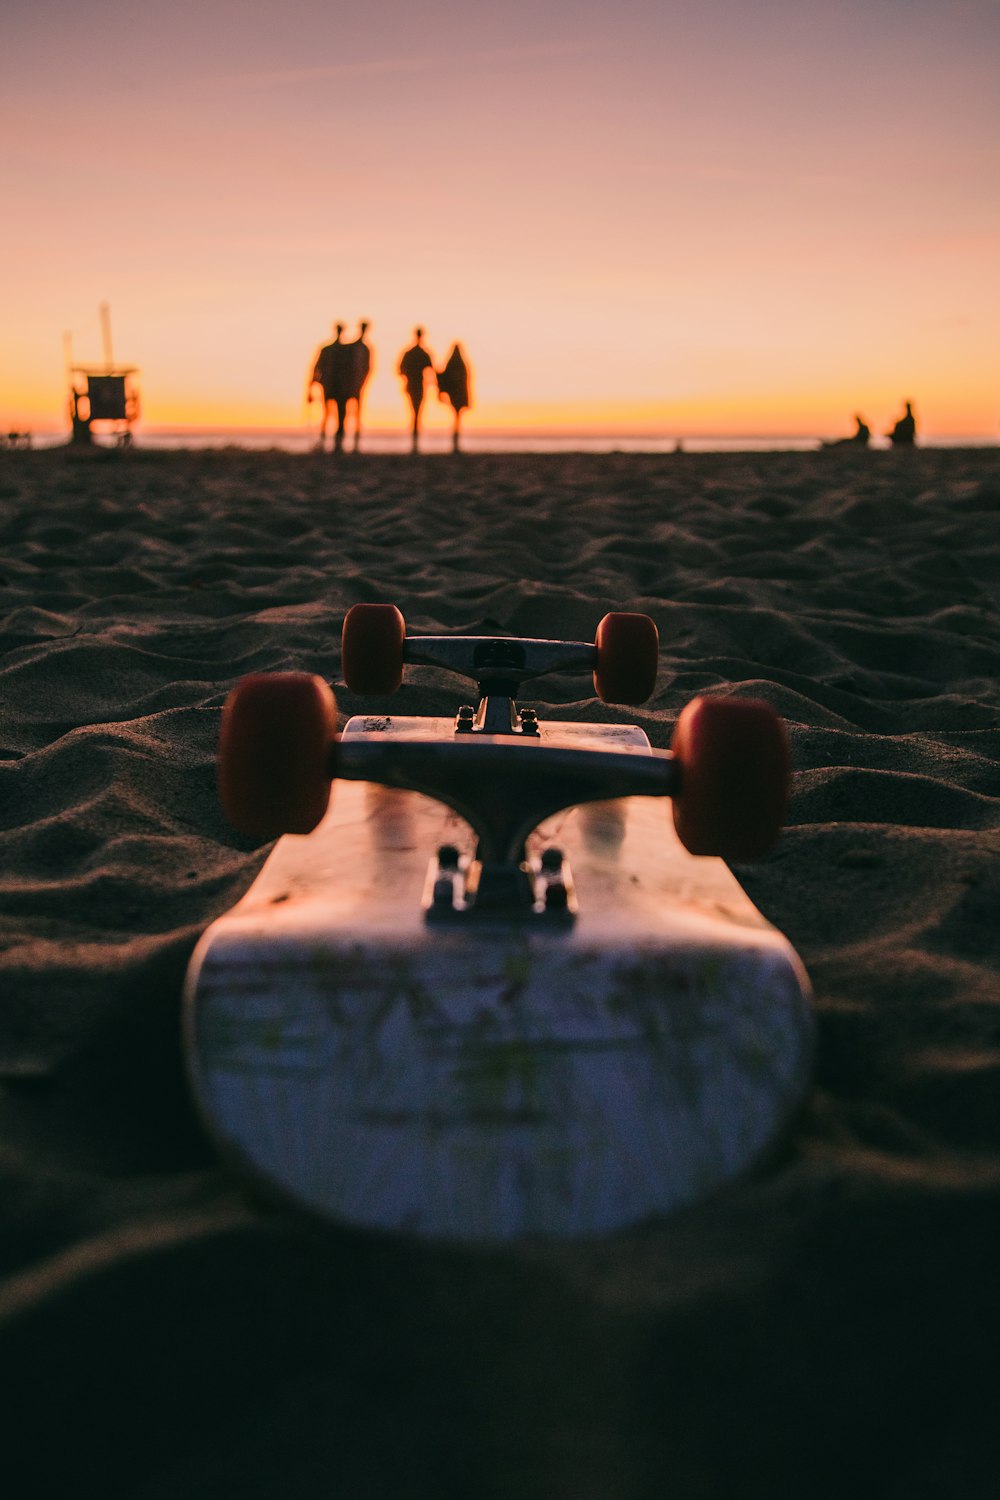 ビーチの砂の上のスケートボードのクローズアップ写真